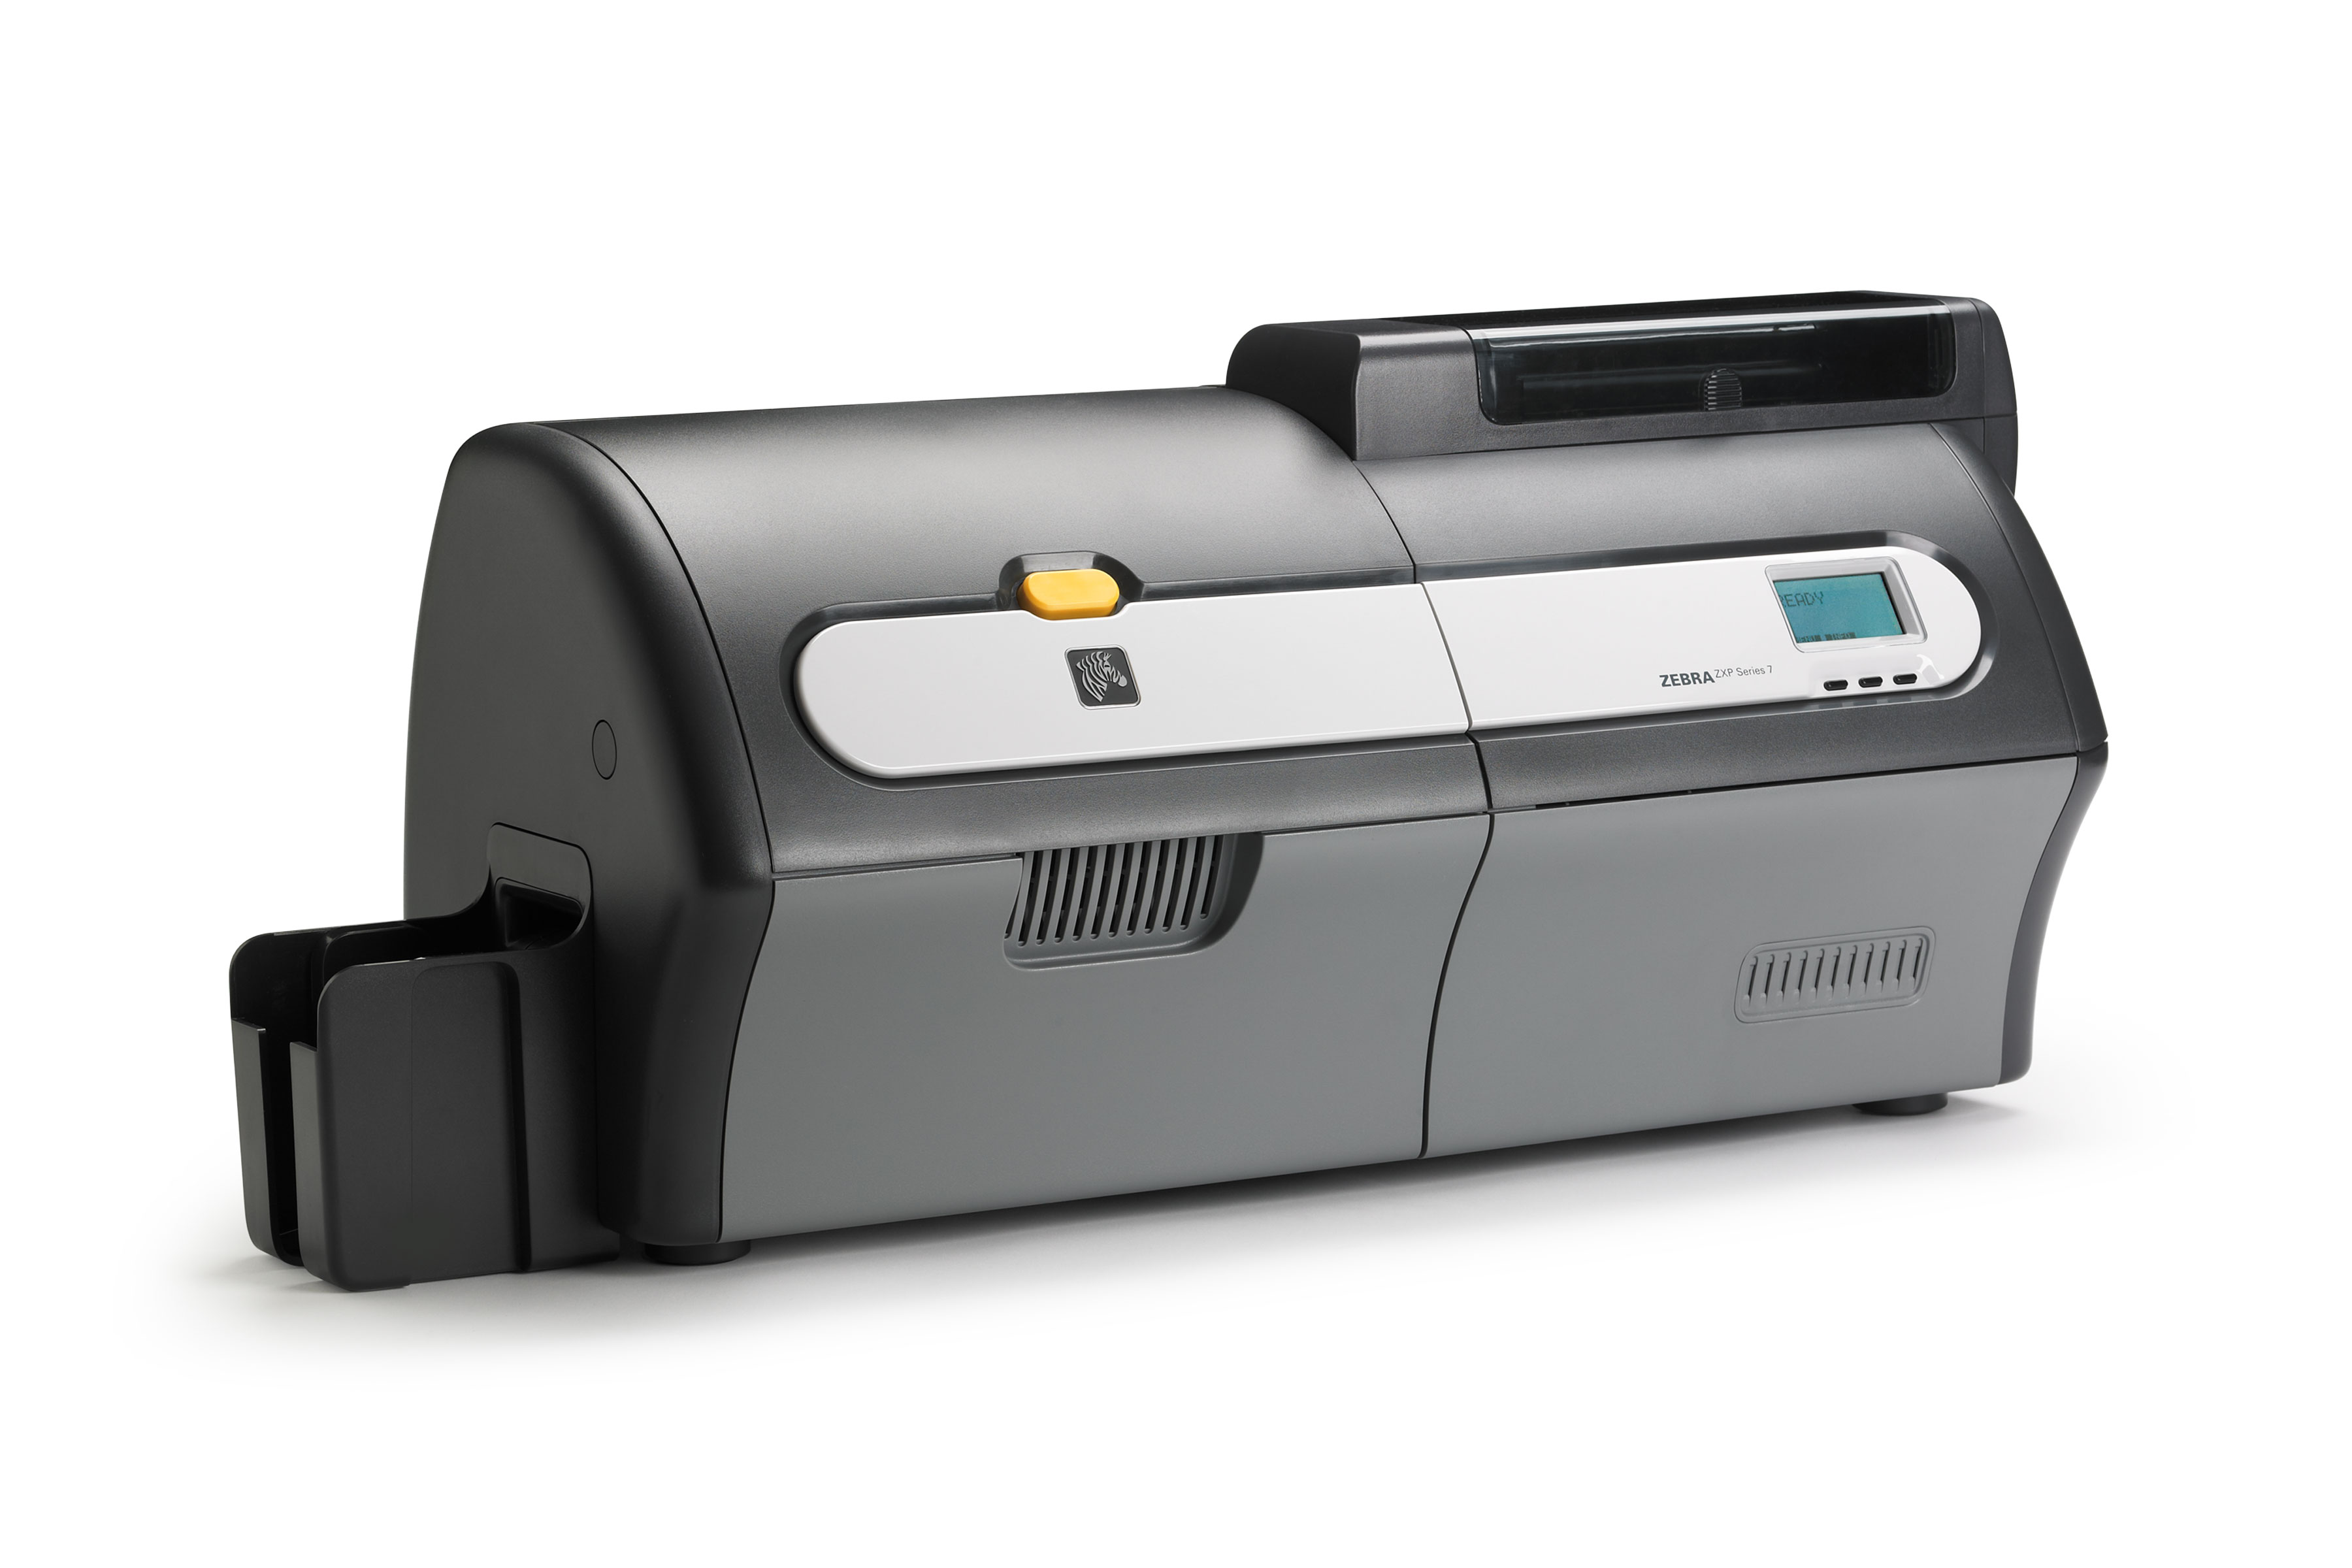 Zebra ZXP Series 7 ID card printer